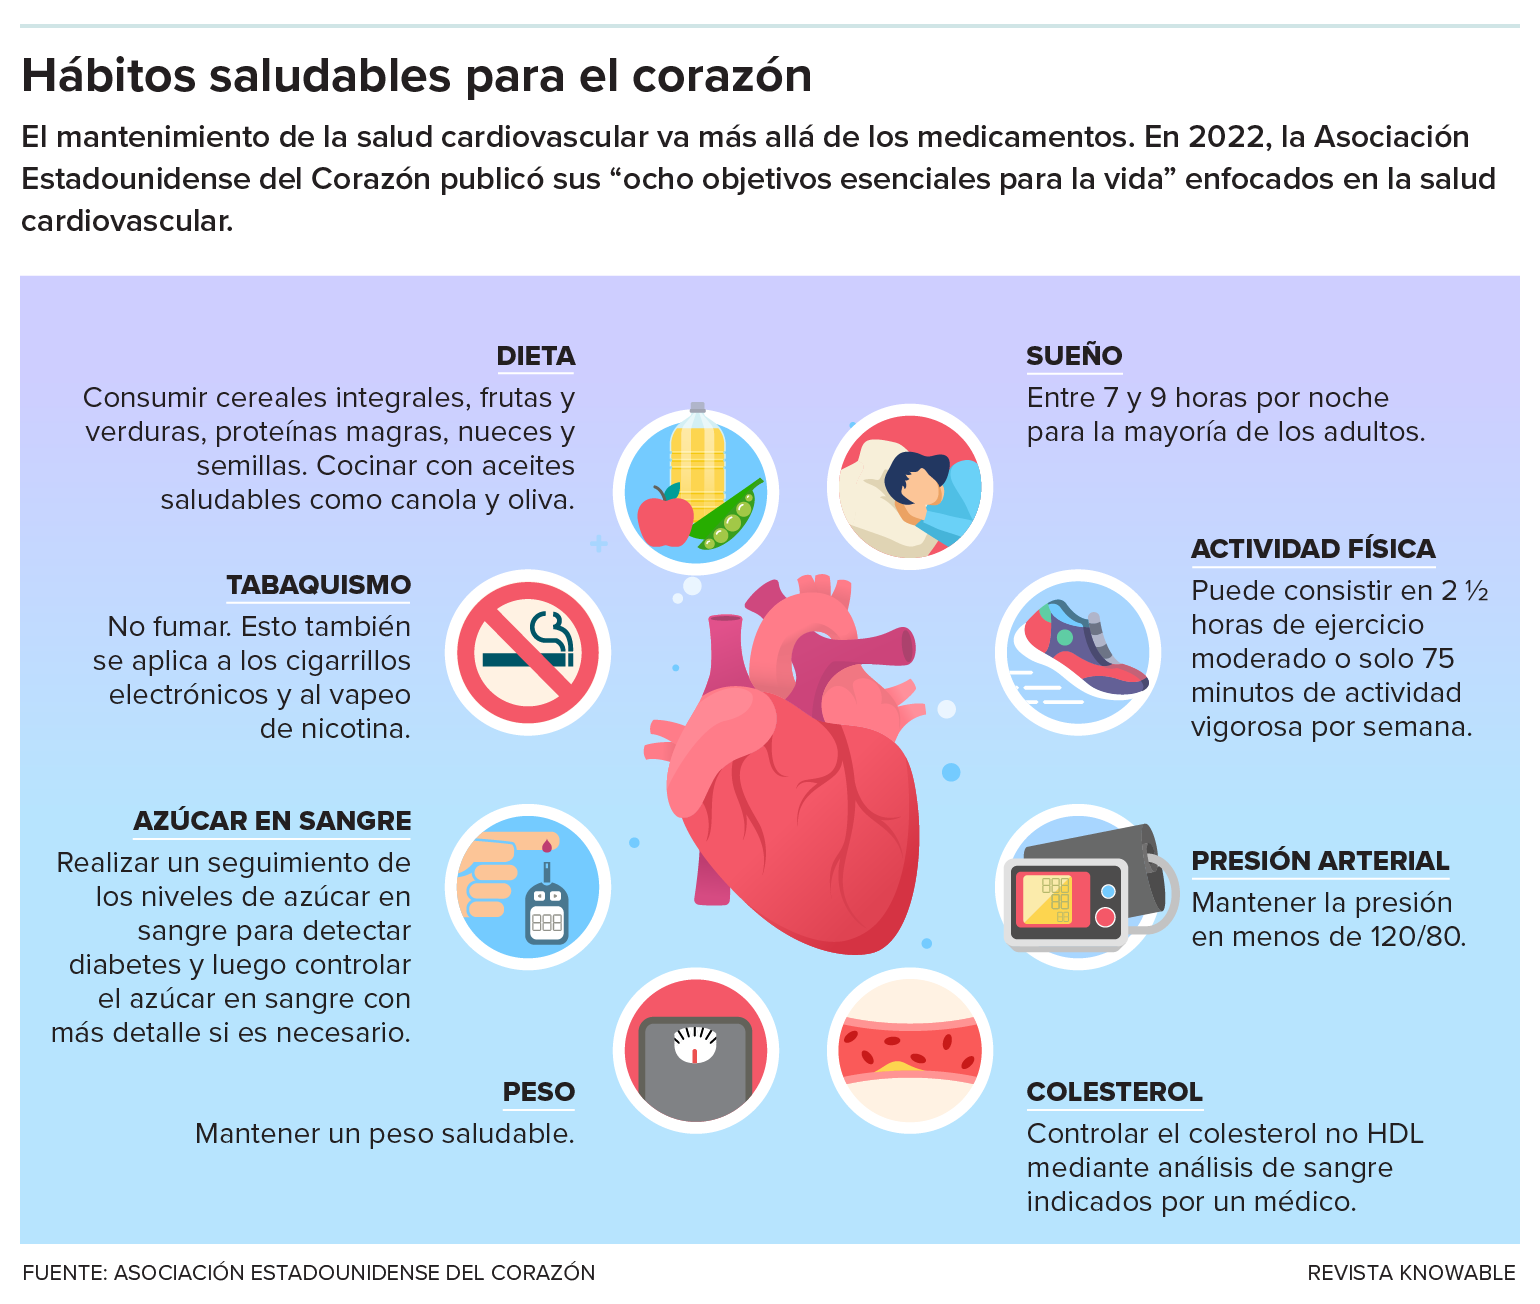 Un gráfico ilustra un corazón rodeado de íconos que representan los ocho hábitos de salud: sueño, actividad física, presión arterial, colesterol, peso, azúcar en sangre, tabaquismo y dieta.